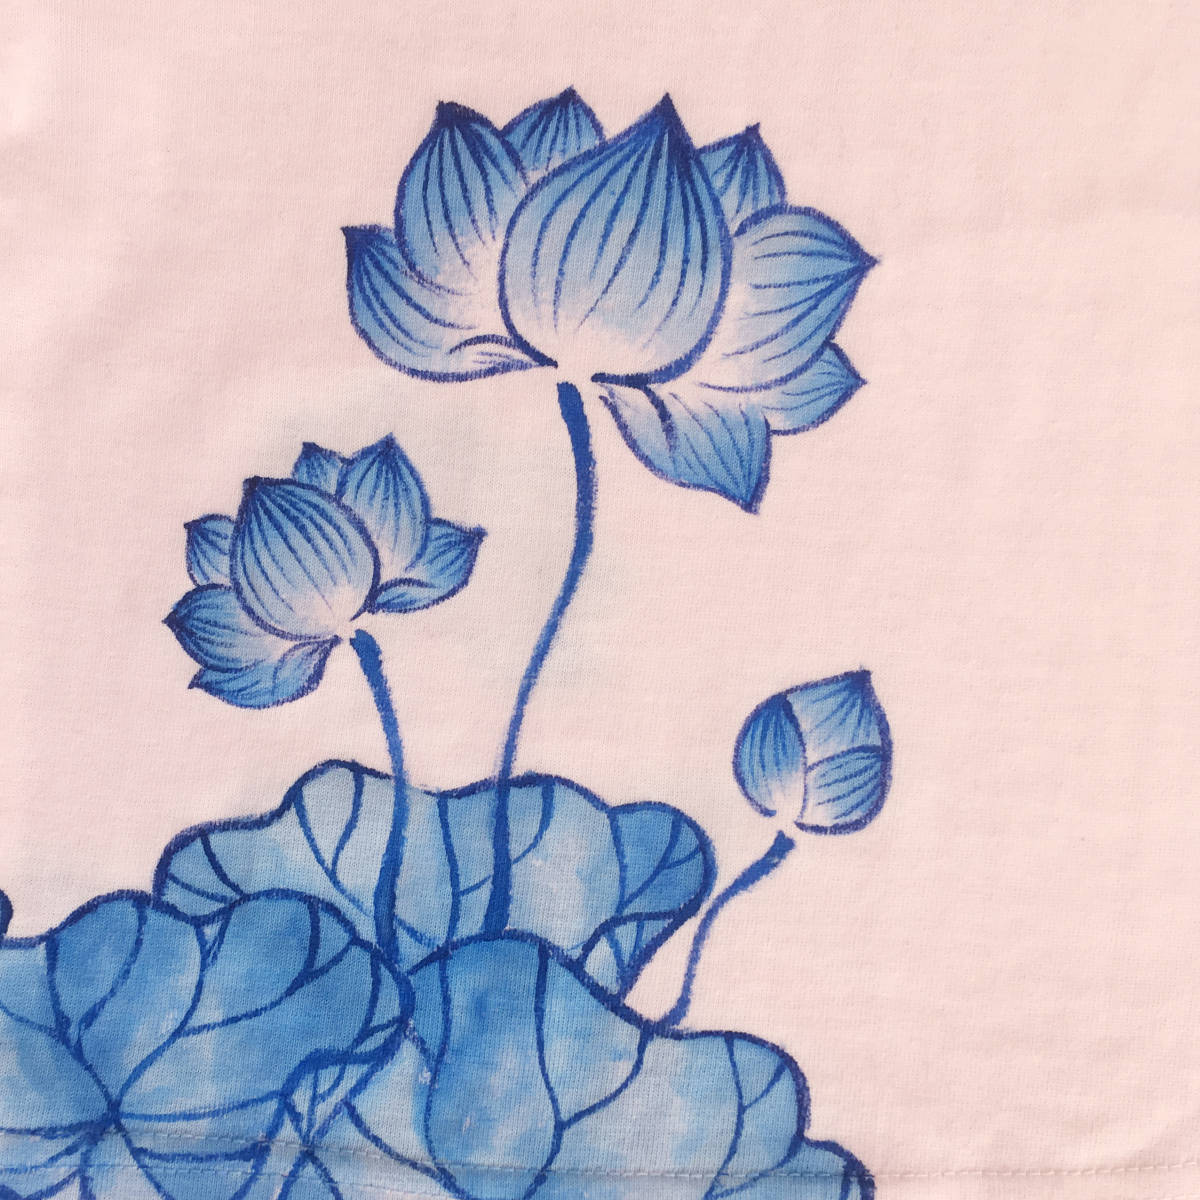 キッズ Tシャツ 110サイズ ピンク 蓮柄Tシャツ 手描きで描いた蓮の花柄Tシャツ 半袖 和柄 和風 レトロ ハンドメイド